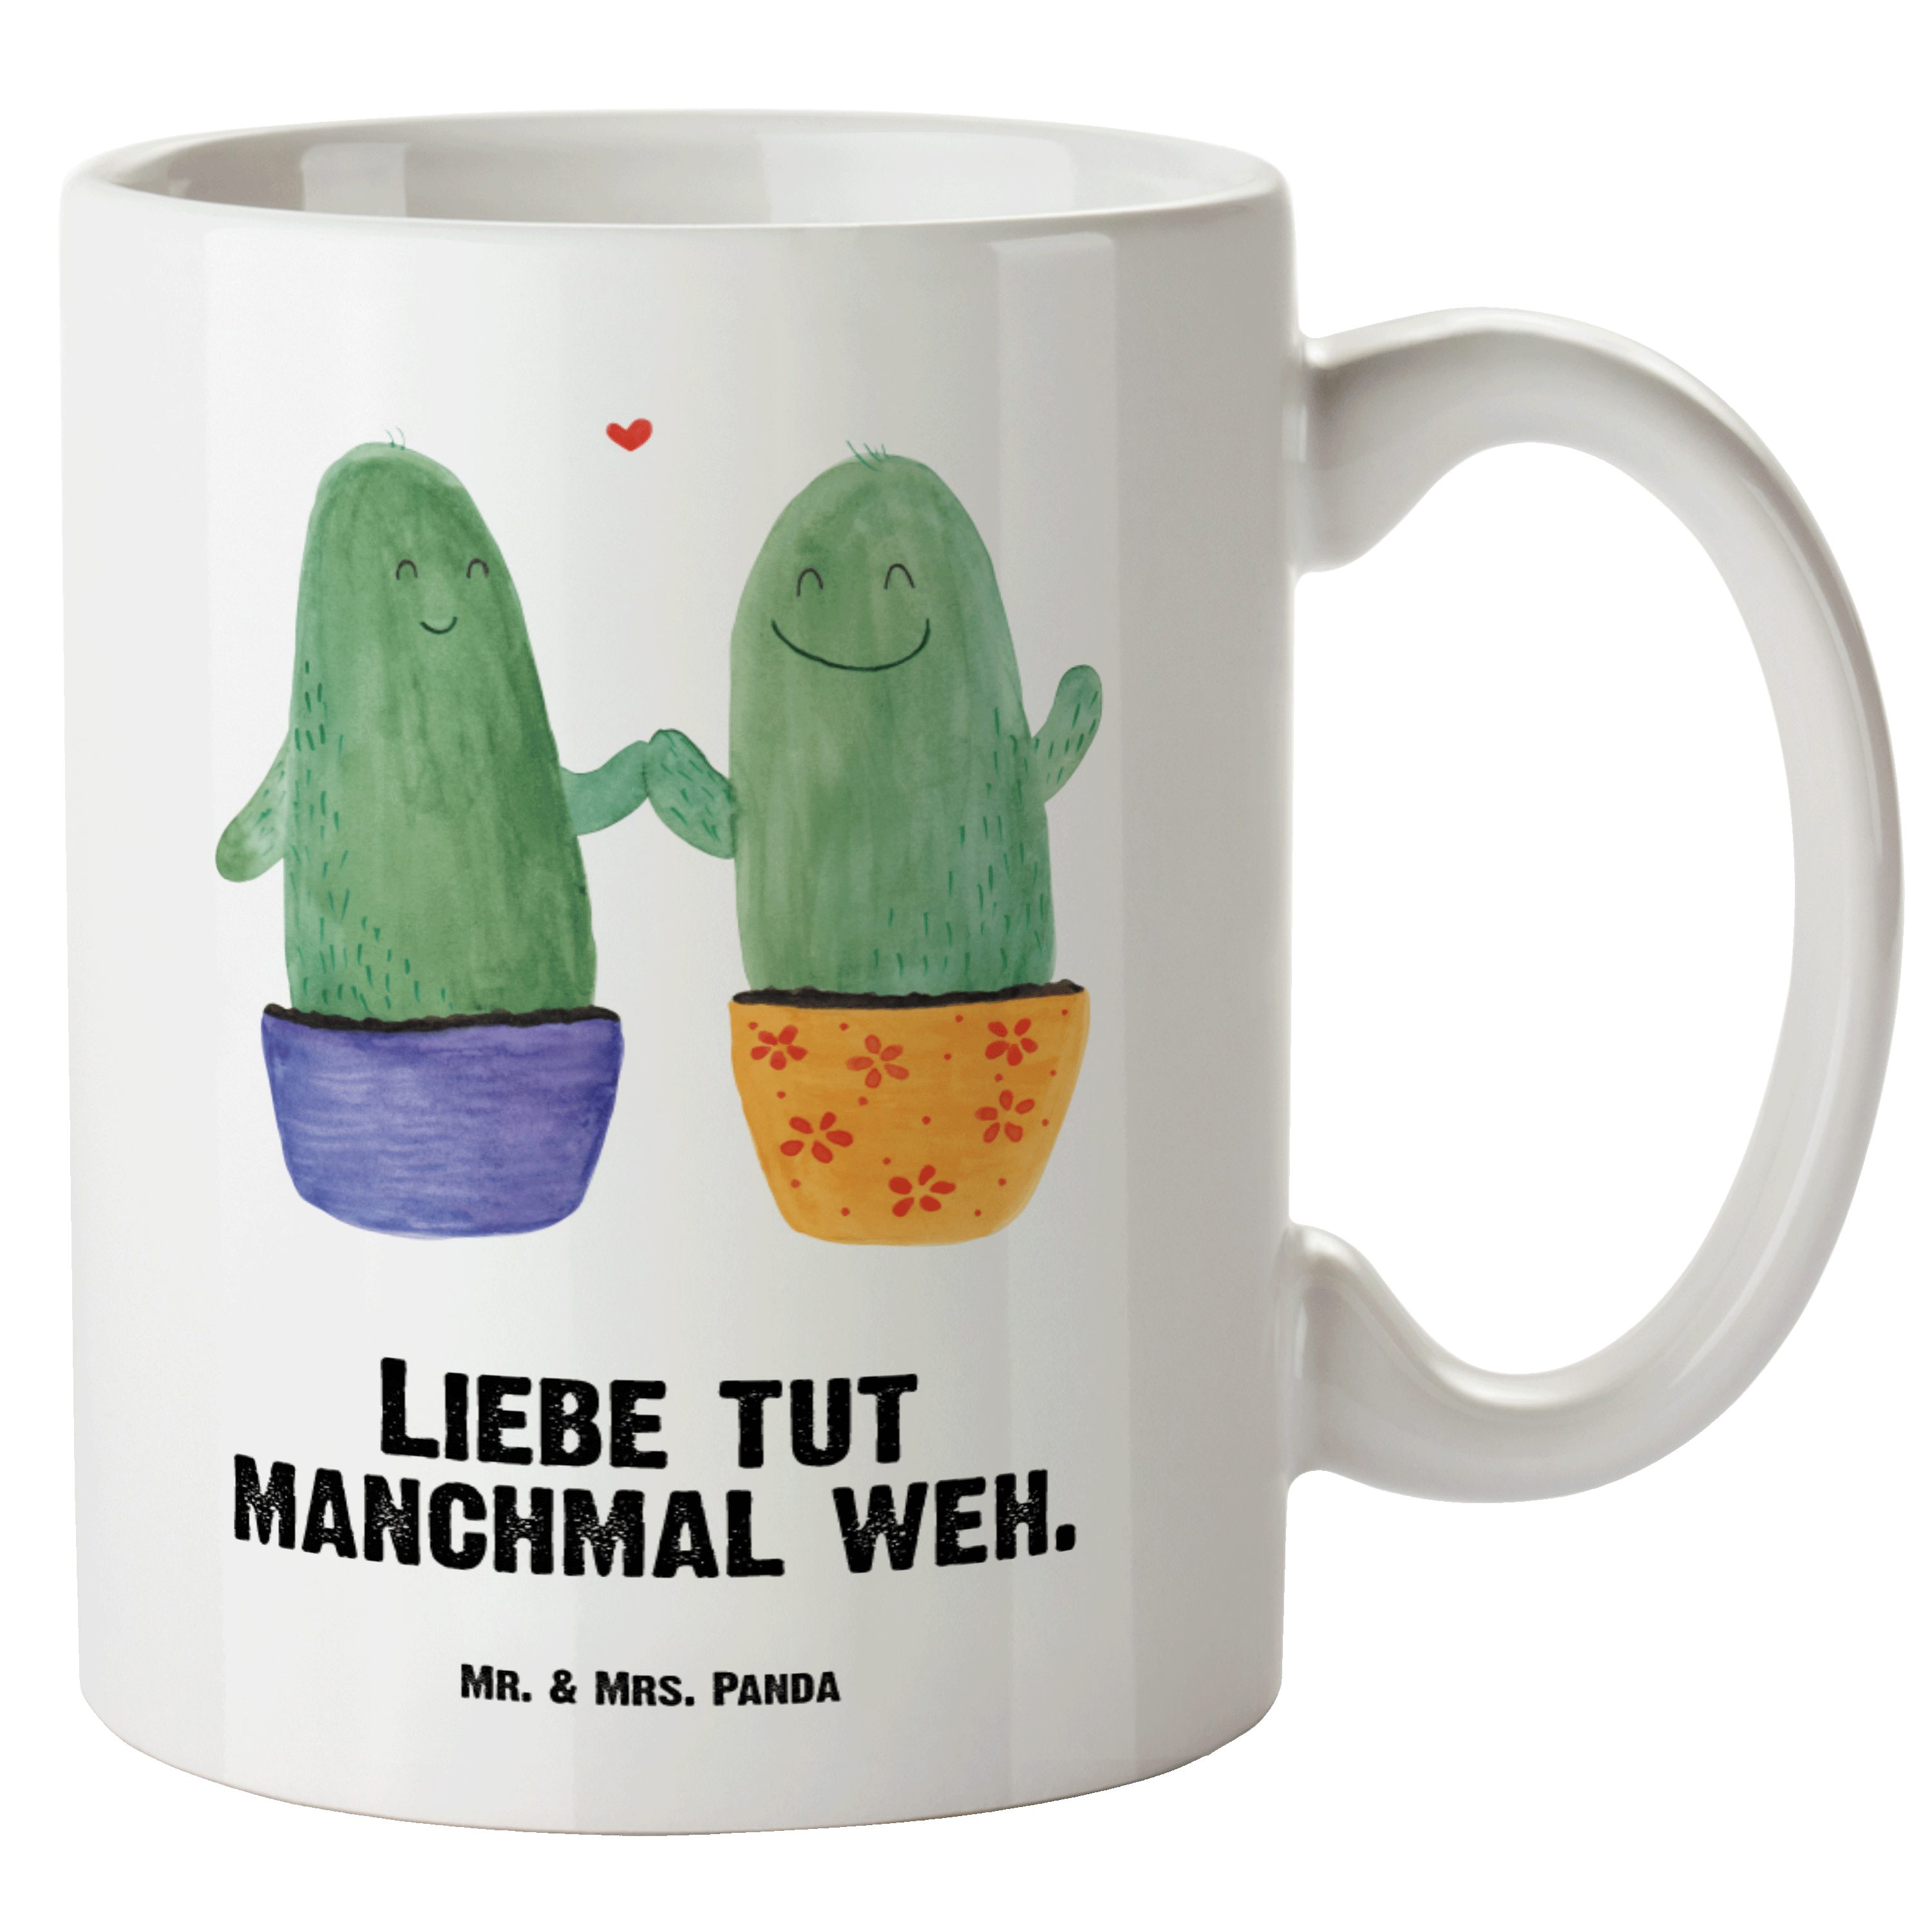 Mr. & Mrs. Panda Tasse Kaktus Liebe - Weiß - Geschenk, Jumbo Tasse, spülmaschinenfest, Kaktu, XL Tasse Keramik